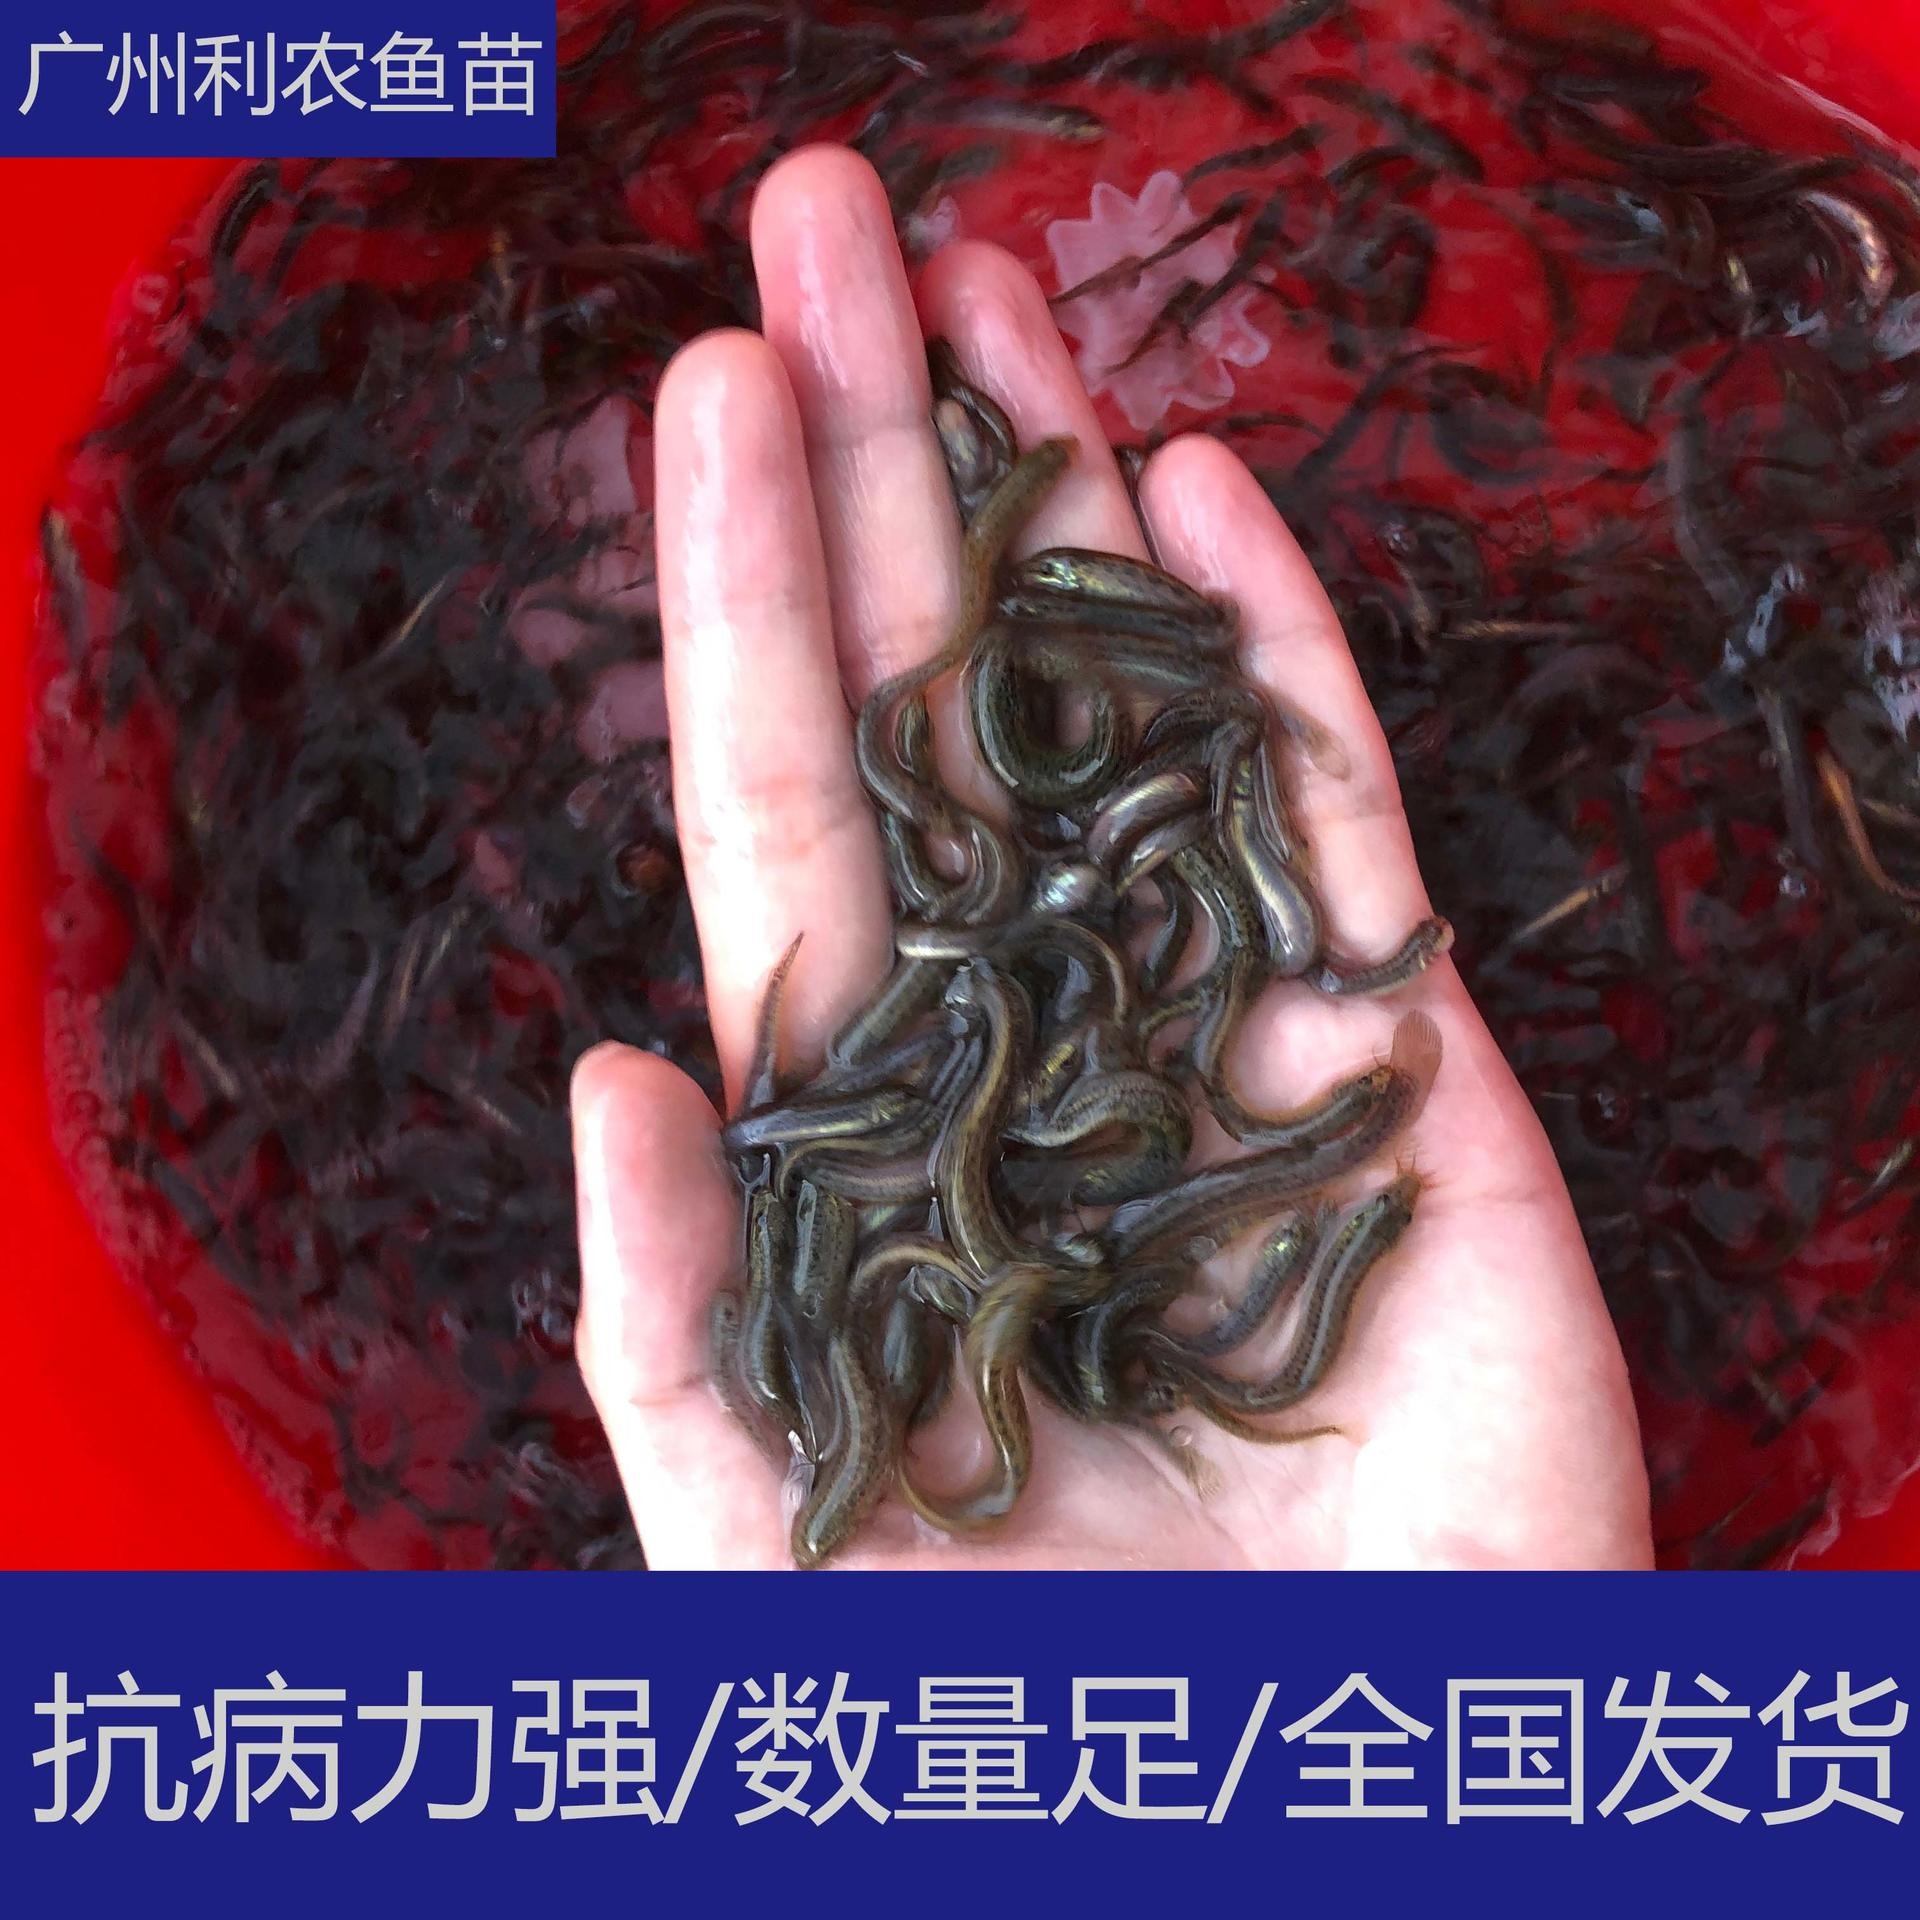 厂家直销 广东惠州泥鳅苗批发 3-5cm大量台湾泥鳅养殖供应